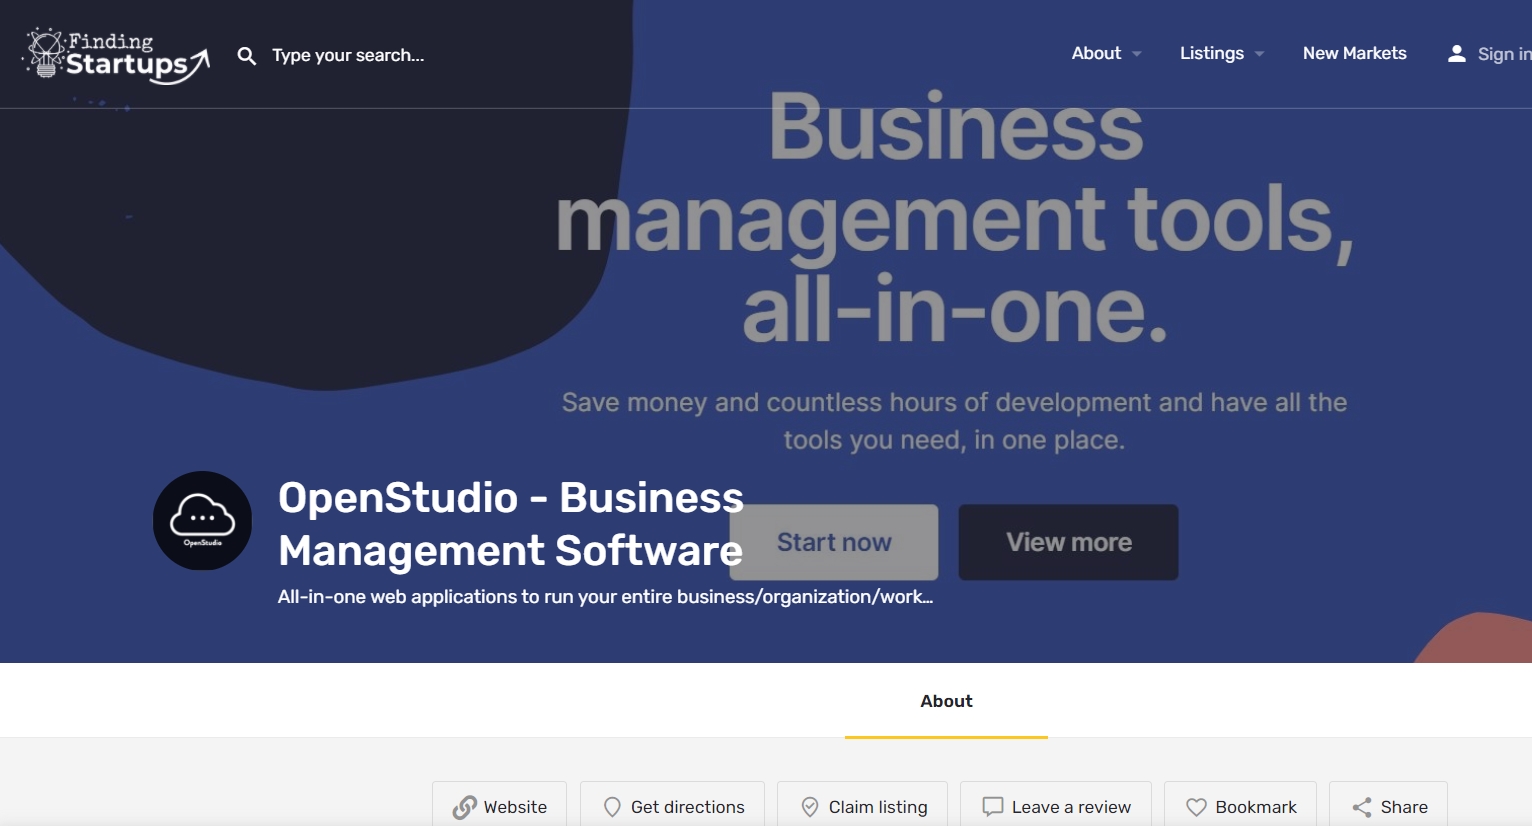 OpenStudio - Business Management Software